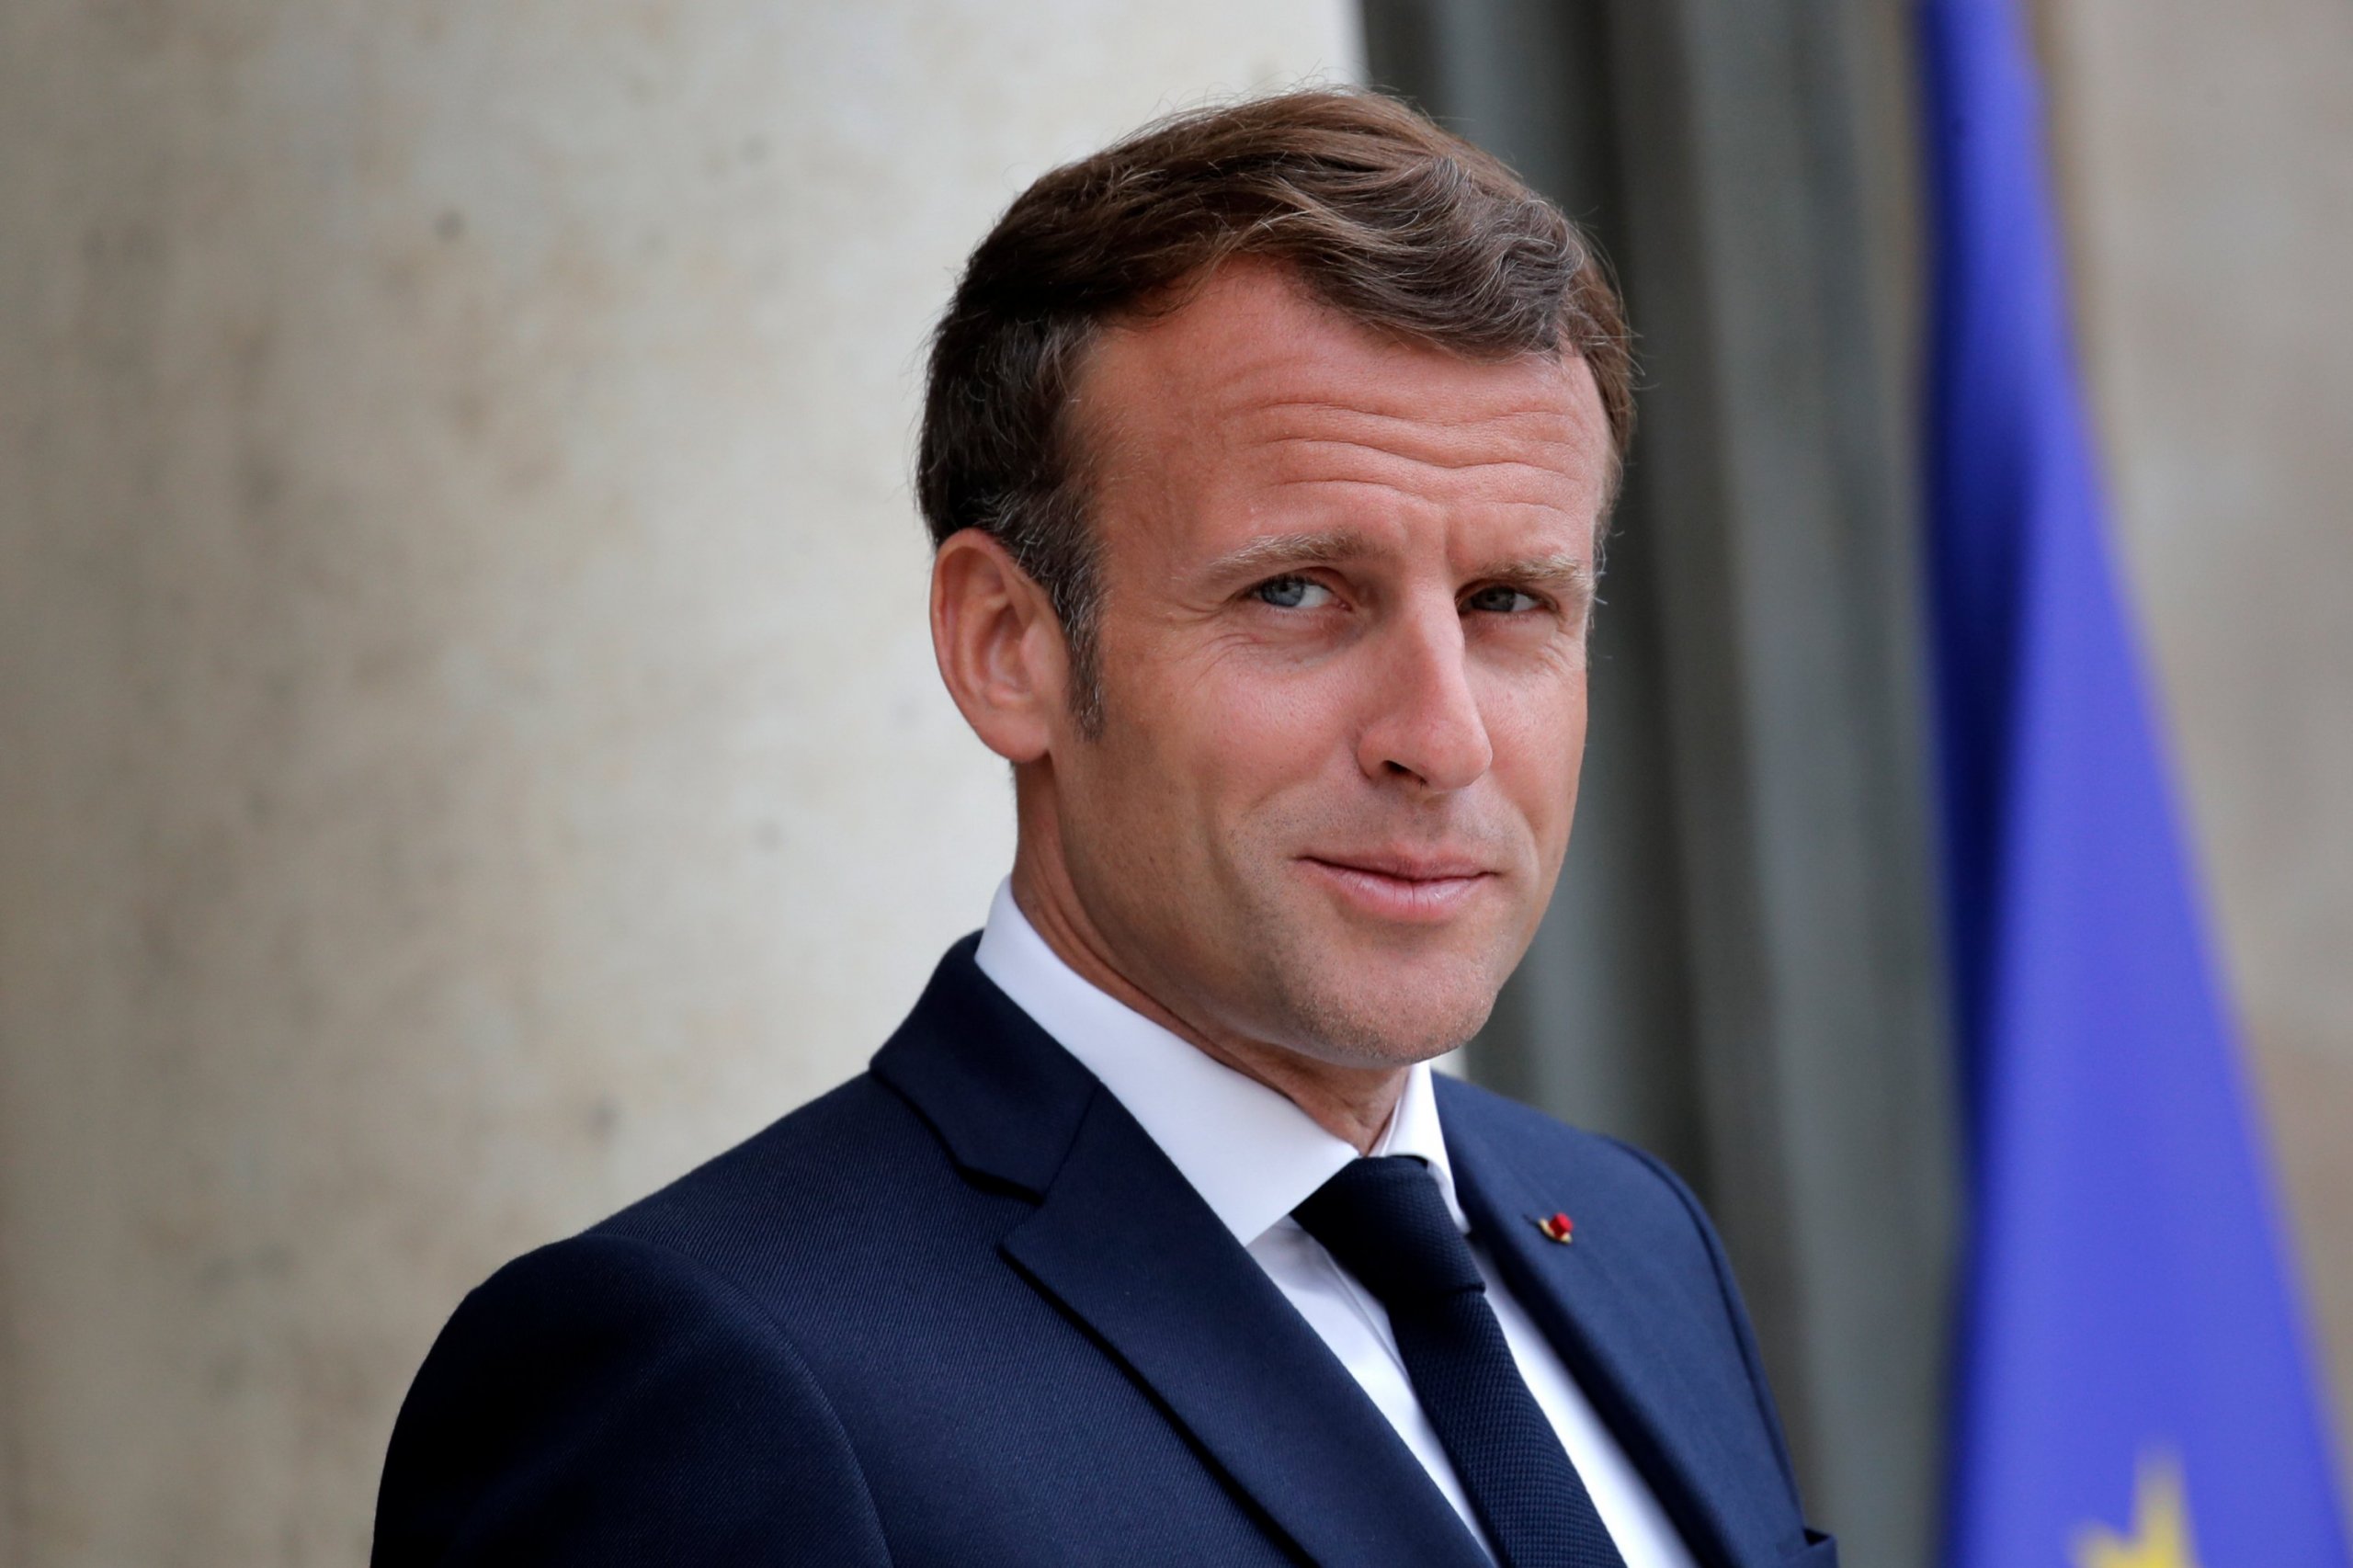 President Macron Says He Understands Muslim's Shock Over Prophet's Cartoon